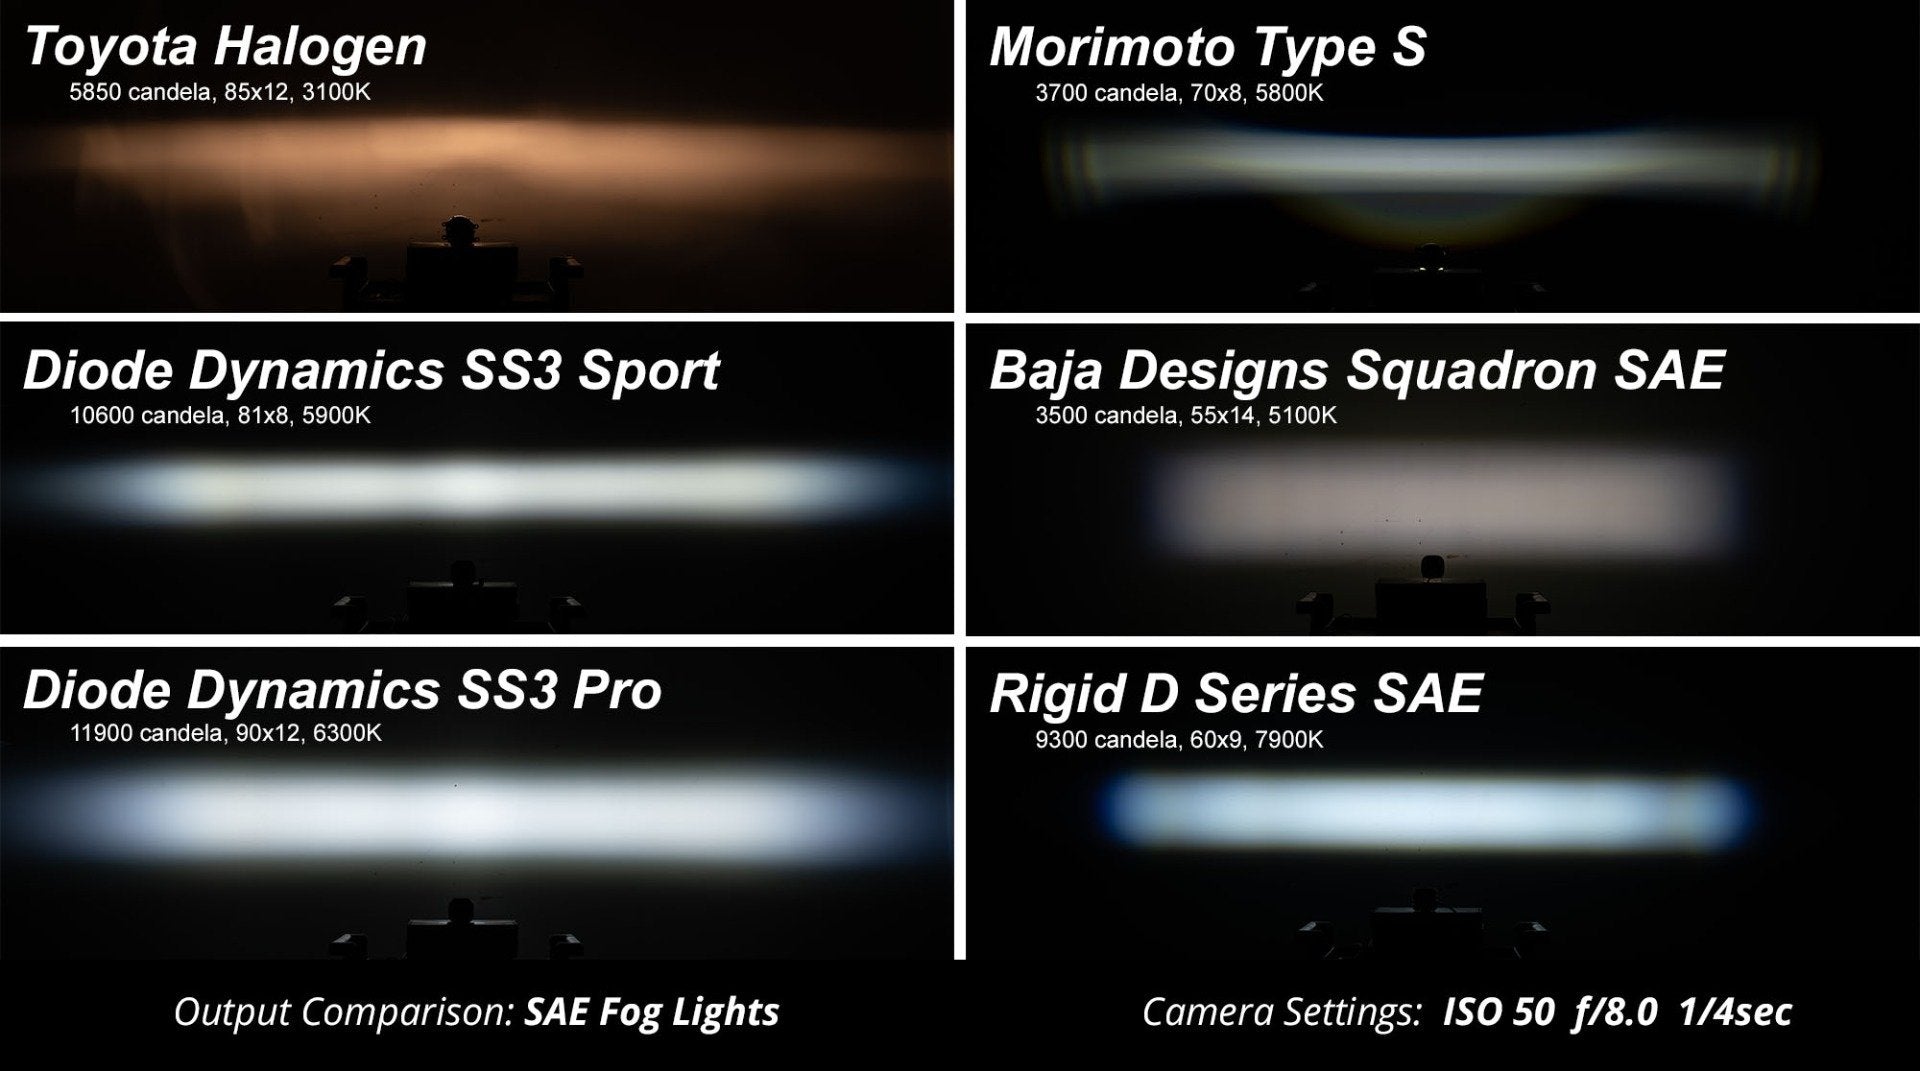 SS3 Type AS LED Fog Light Kit Diode Dynamics-